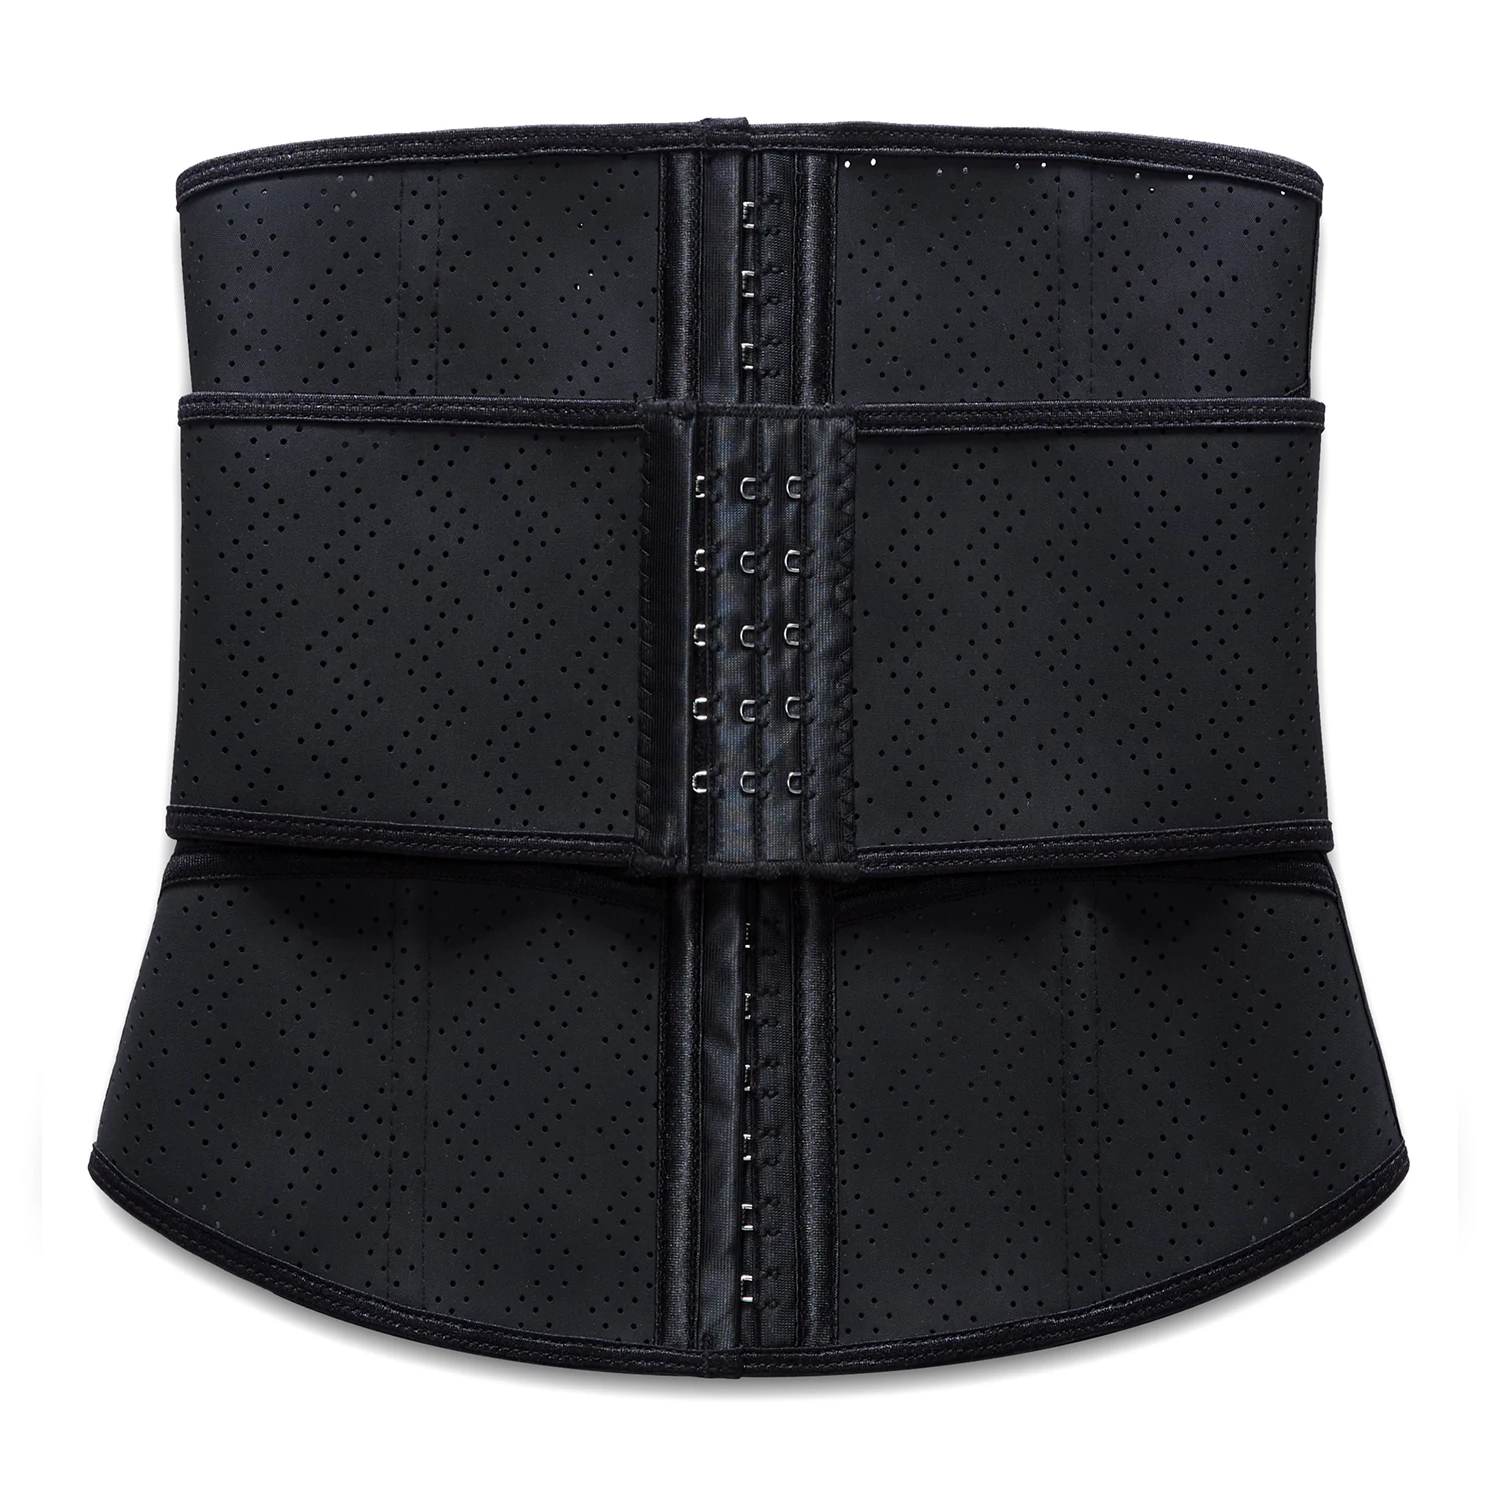 

Maikete Women Body Shaper one Belt Support Back latex Weight Loss Belly Sauna Sweat Corset Belt Waist Trainer, Black